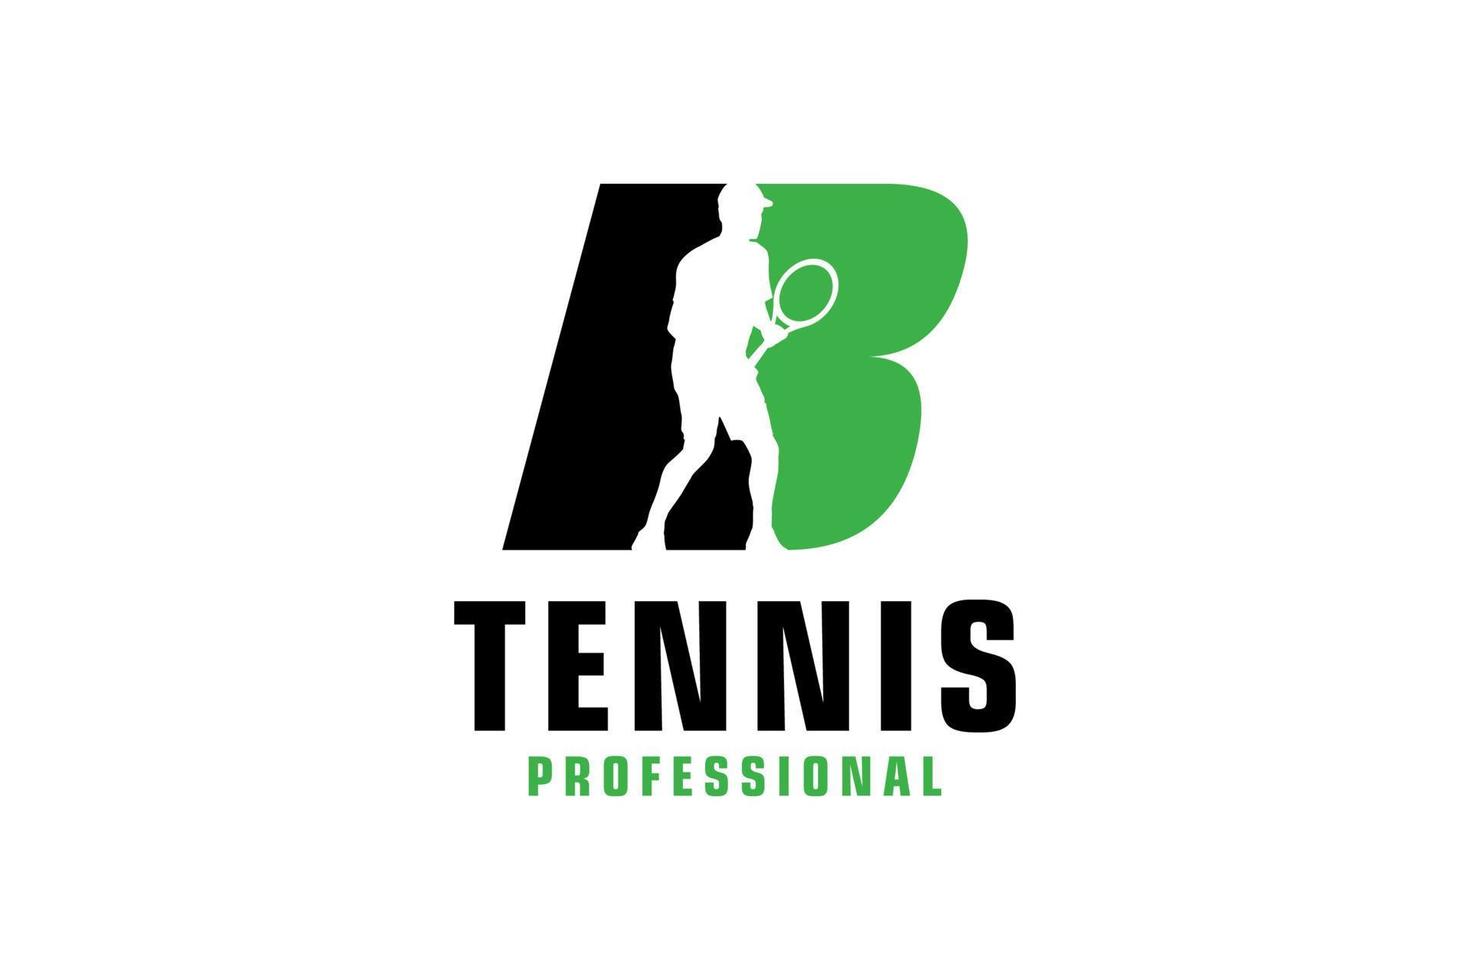 letra b com design de logotipo de silhueta de jogador de tênis. elementos de modelo de design vetorial para equipe esportiva ou identidade corporativa. vetor